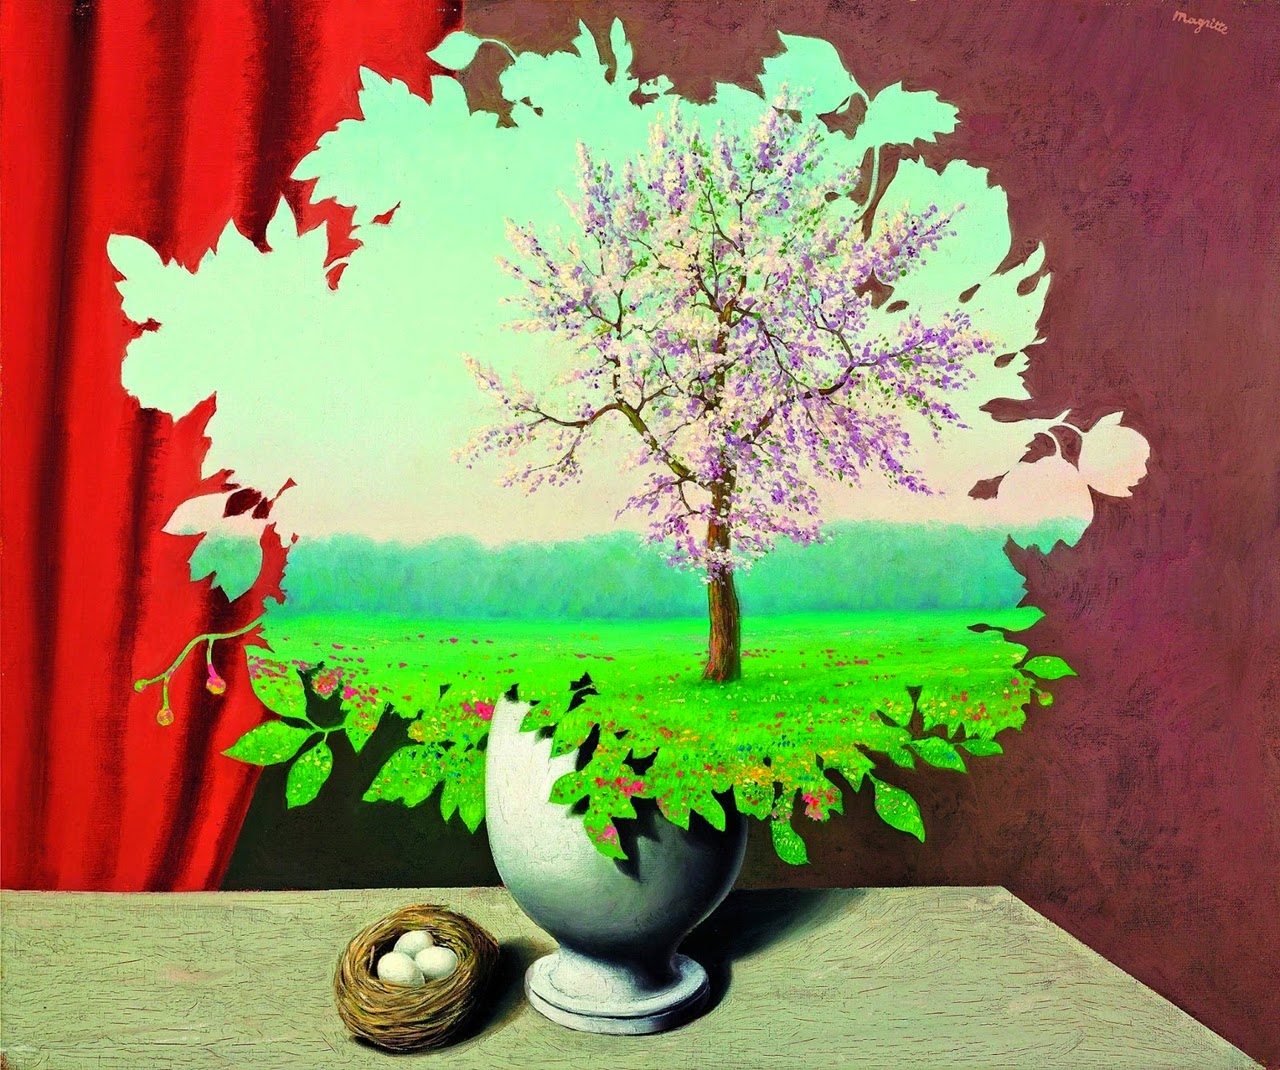 Rene+Magritte (49).jpg